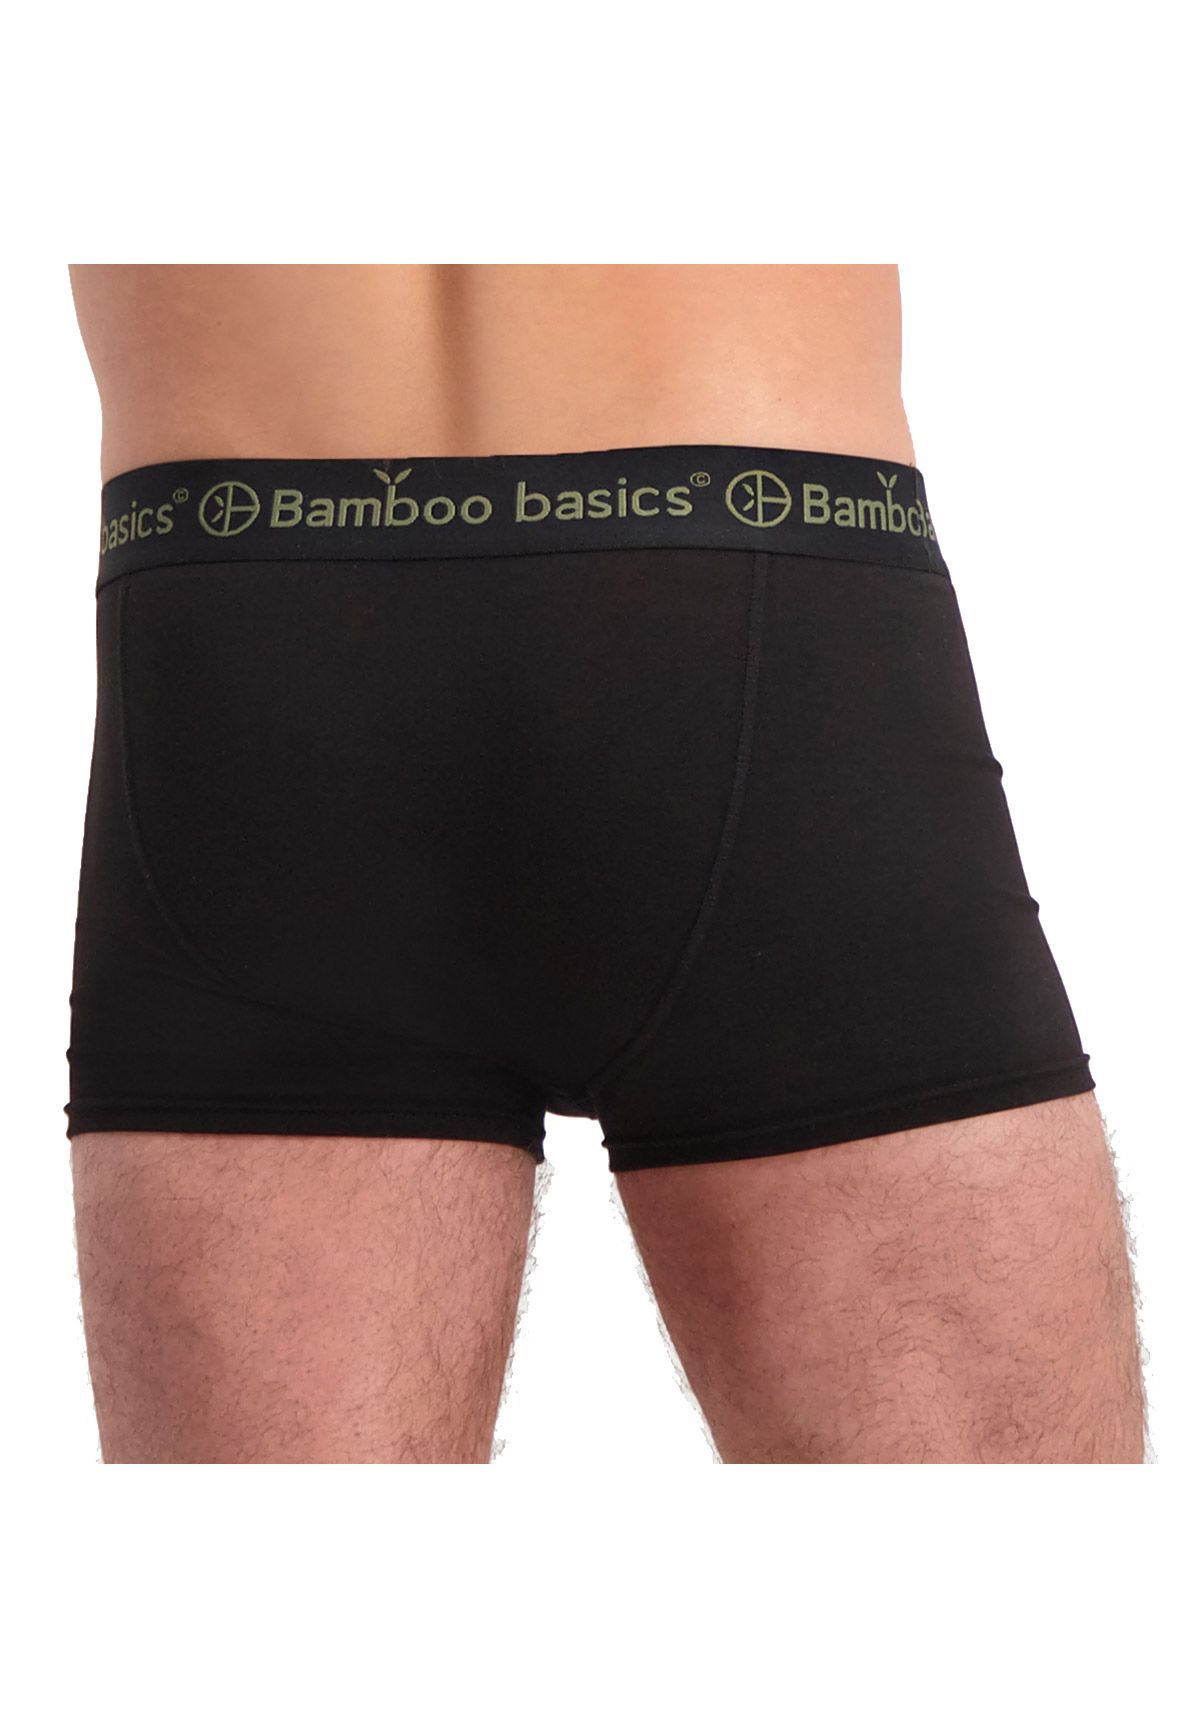 Herren Wäsche Bamboo basics Herren Boxer Shorts, 3er Pack - LIAM Trunks, atmungsaktiv, Jersey